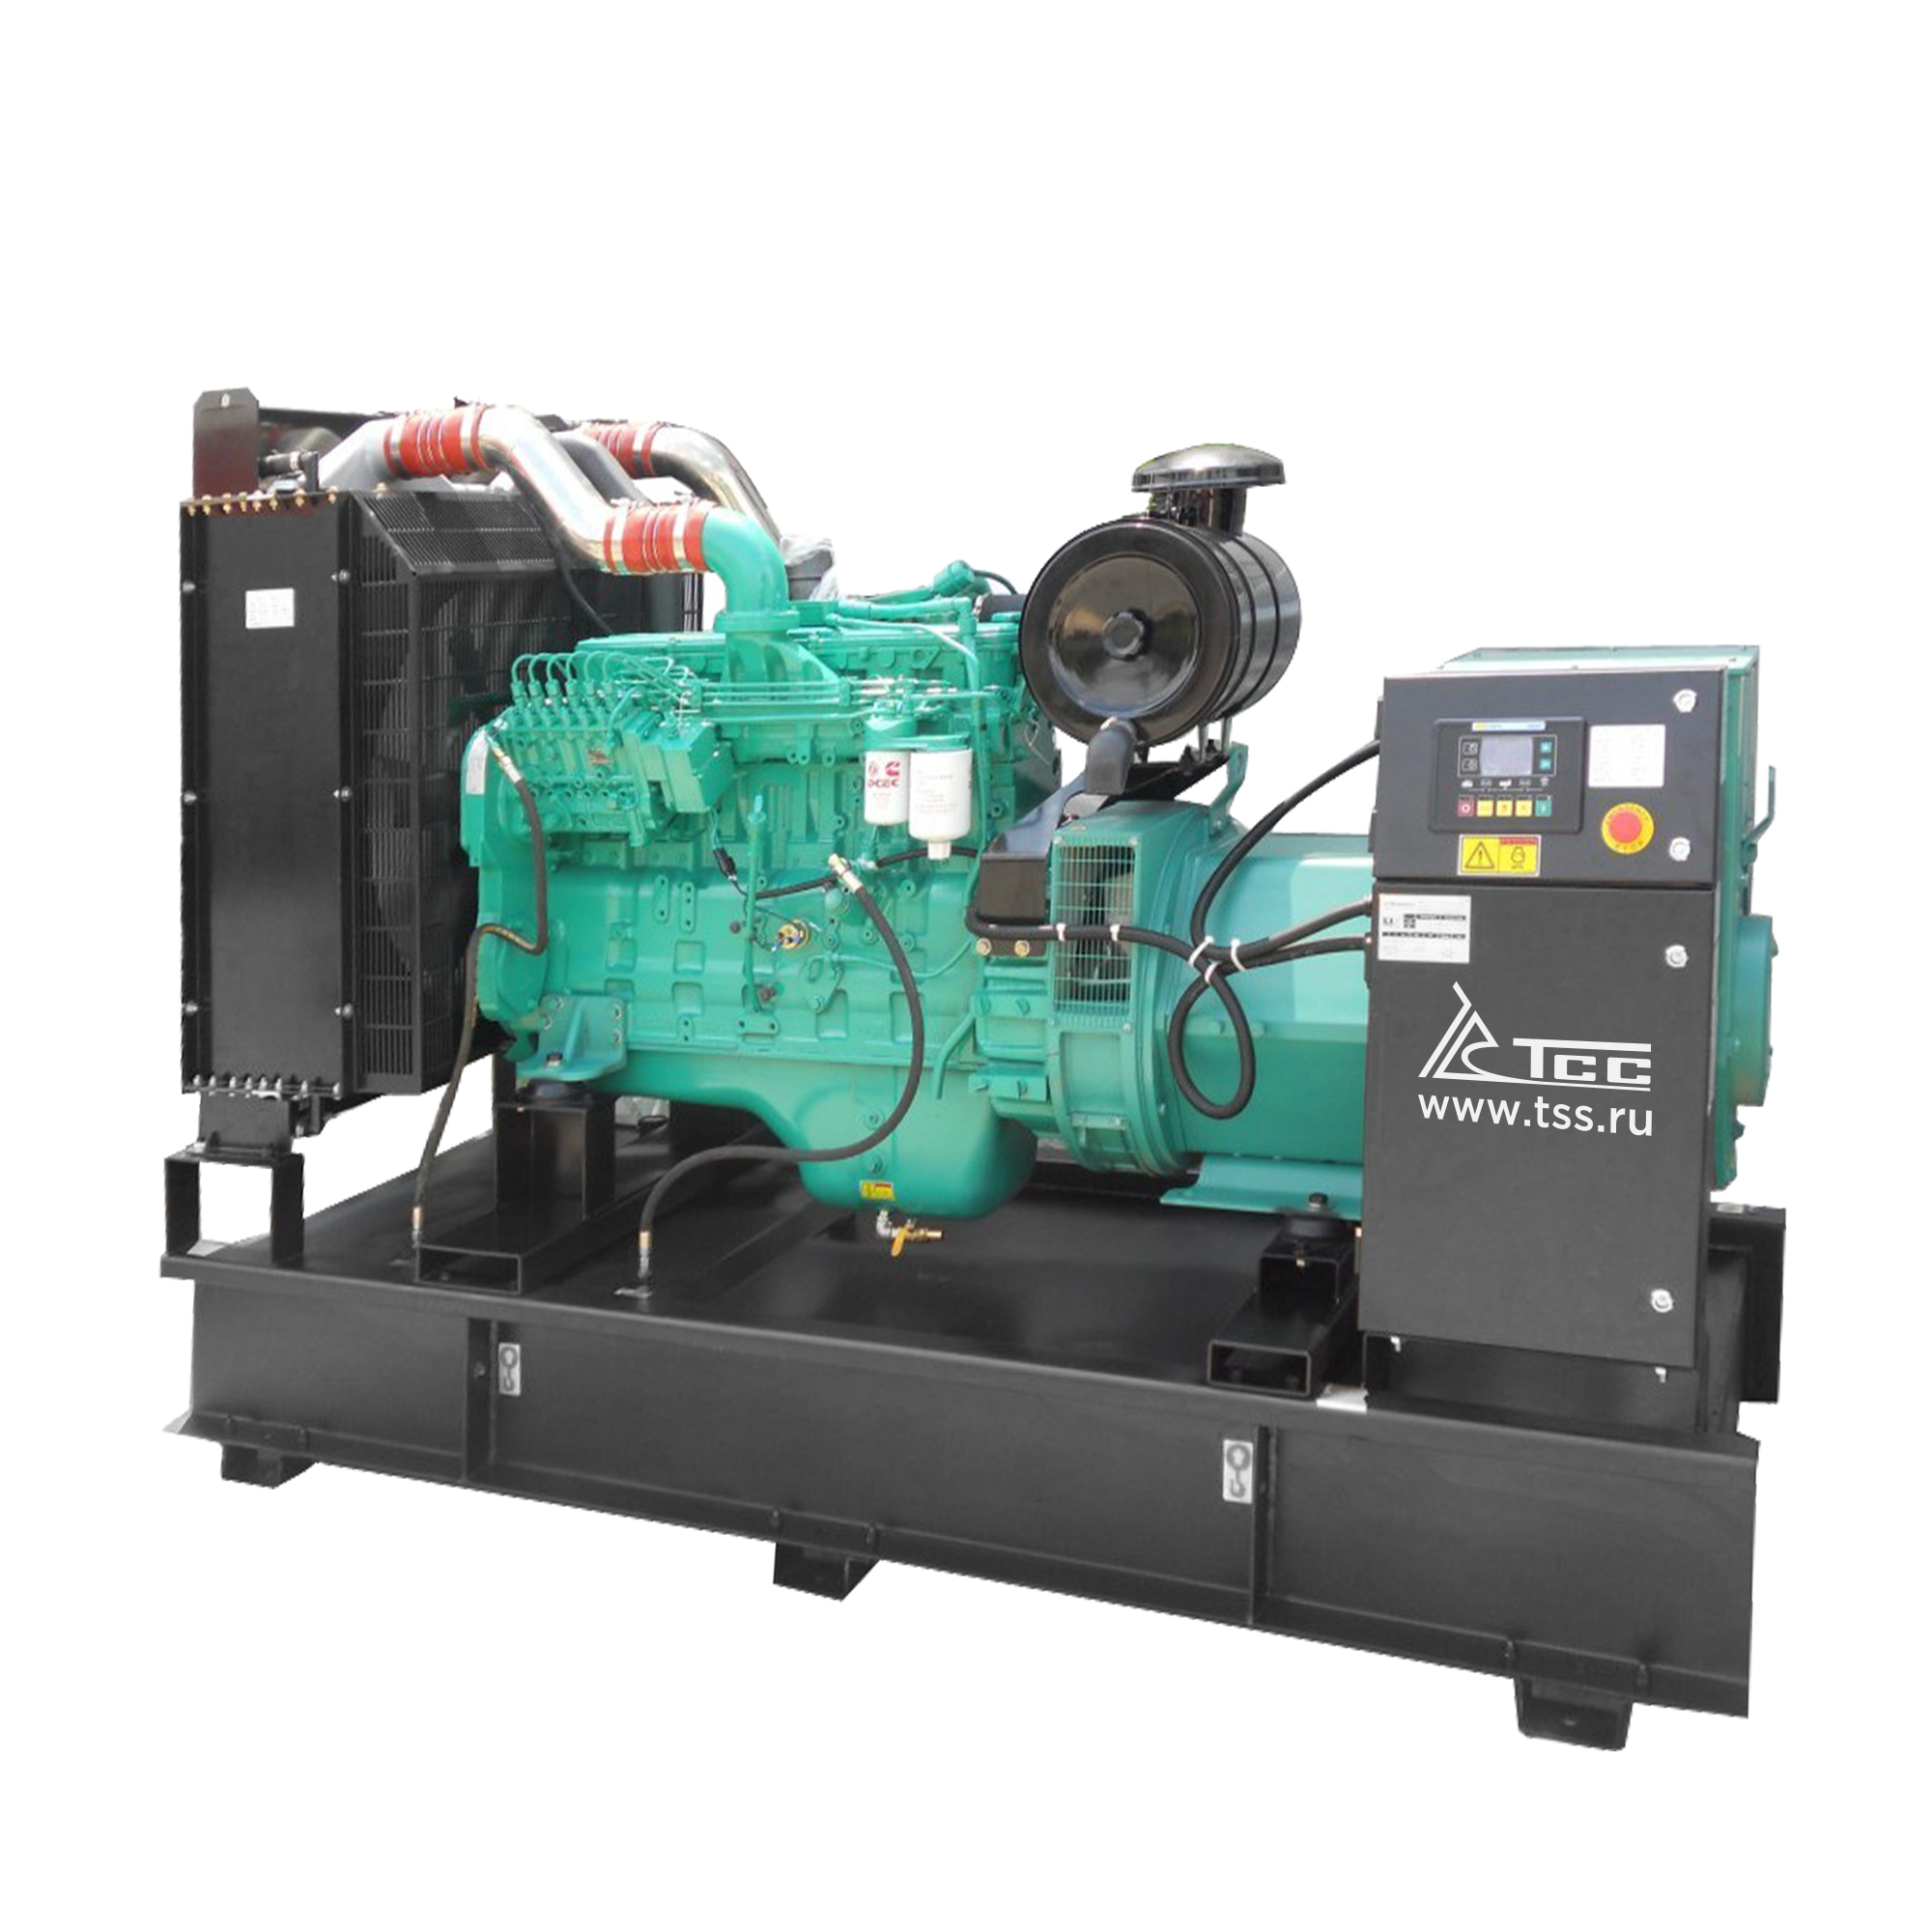 Дизельный генератор ТСС АД-32C-Т400-1РМ15 дизельный генератор тсс ад 1500с т400 1рм15